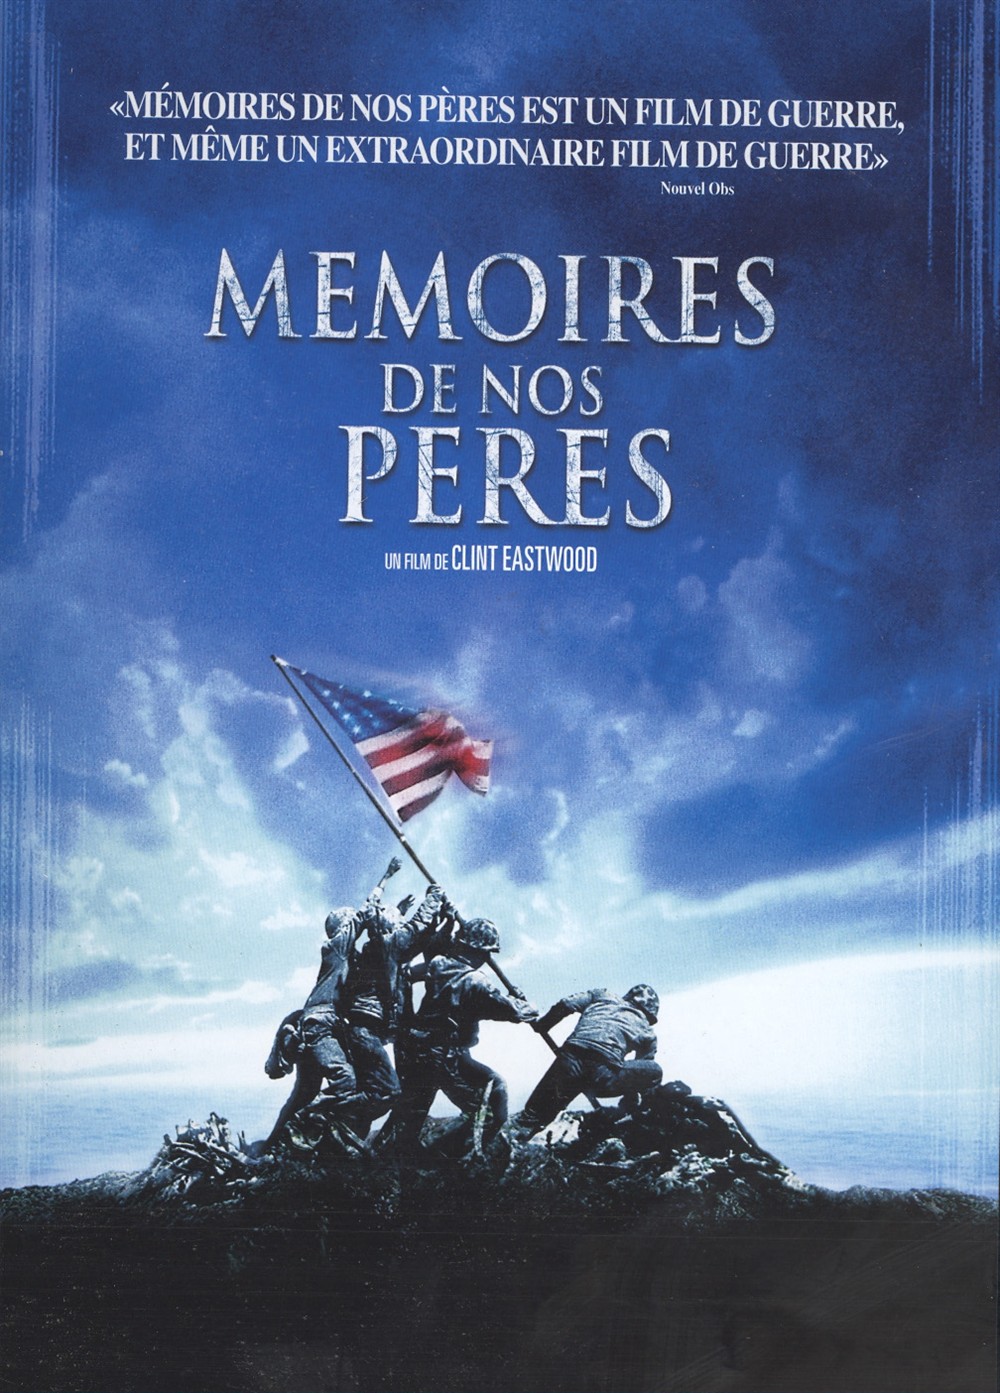 Ciné / télé / DVD / Livres - Page 22 7+-+memoires-de-nos-peres-21287396